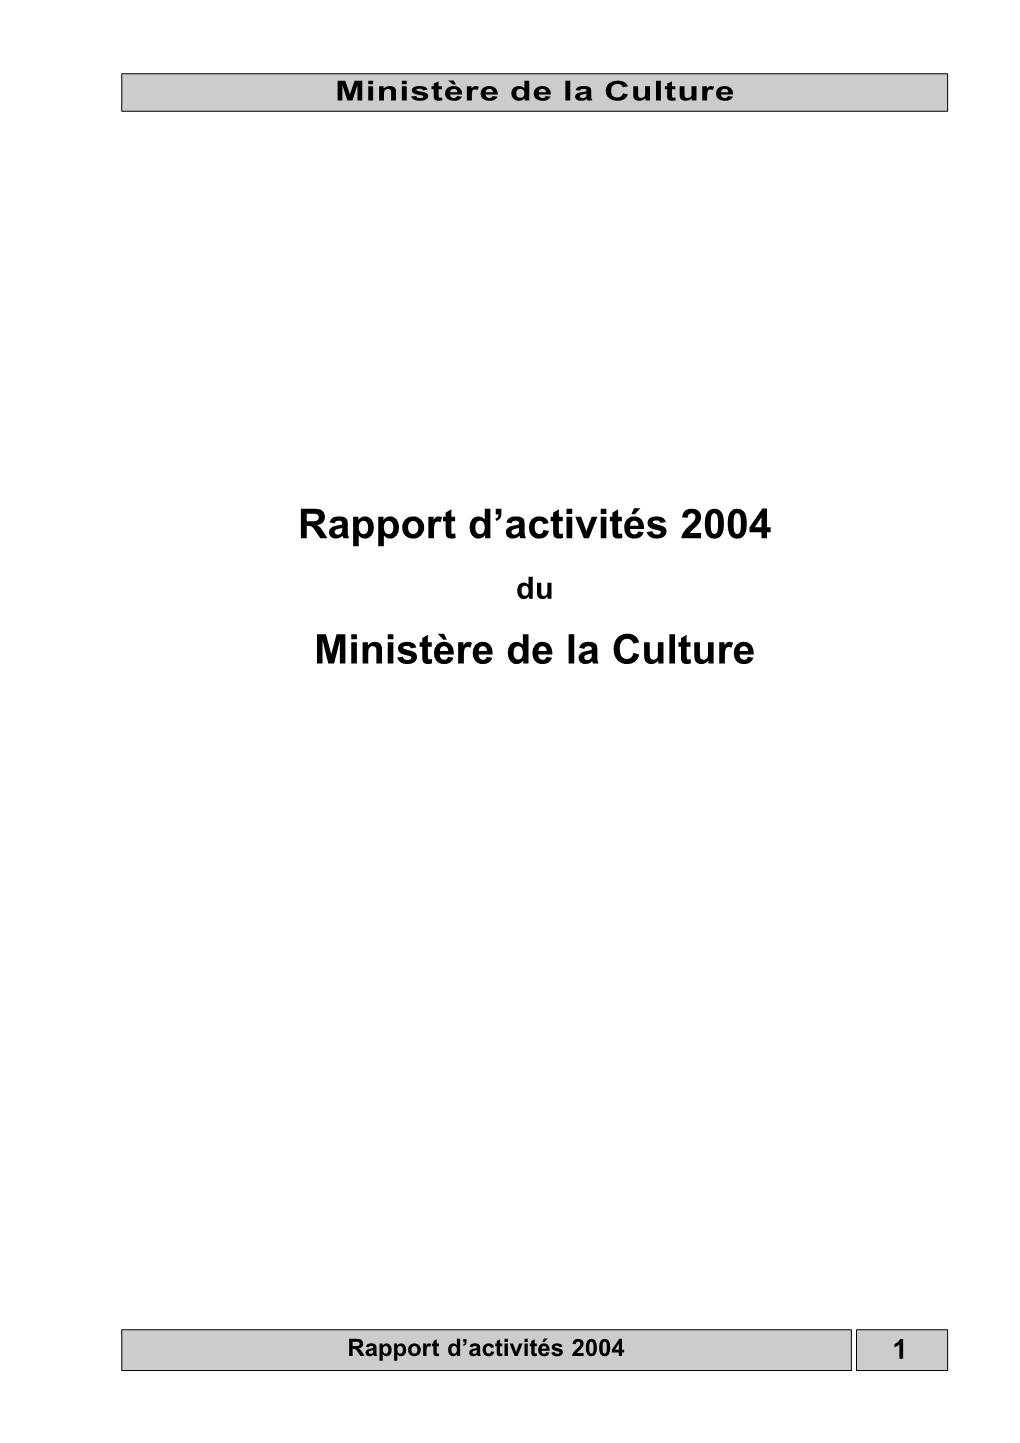 Rapport D'activités 2004 Ministère De La Culture